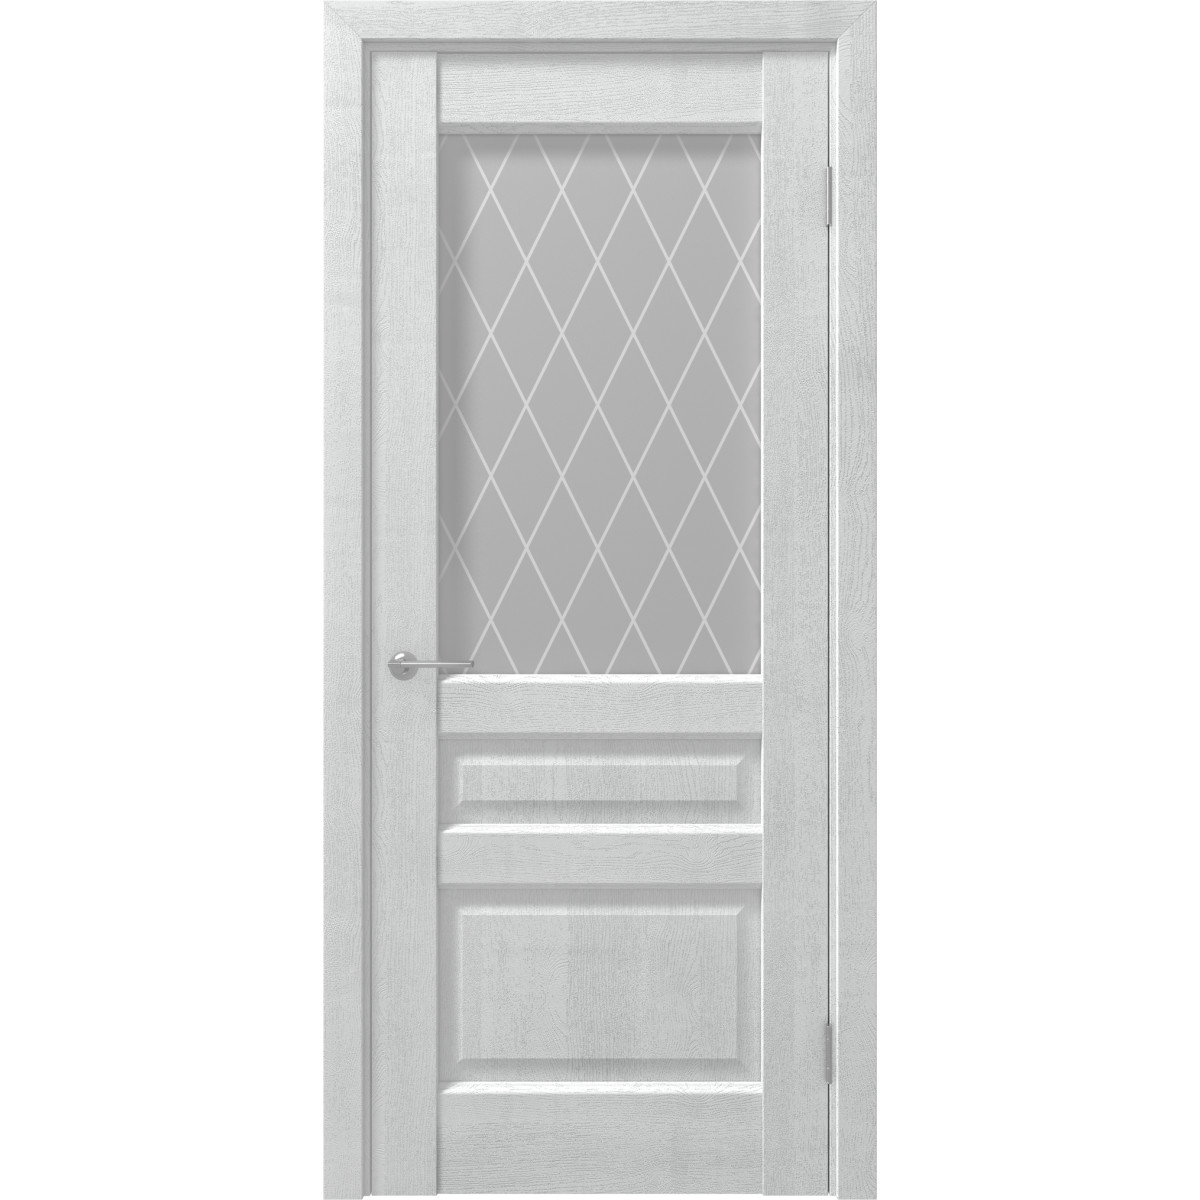 Дверь межкомнатная остеклённая с замком и петлями в комплекте Artens Магнолия 90x200 см ПВХ цвет айсберг